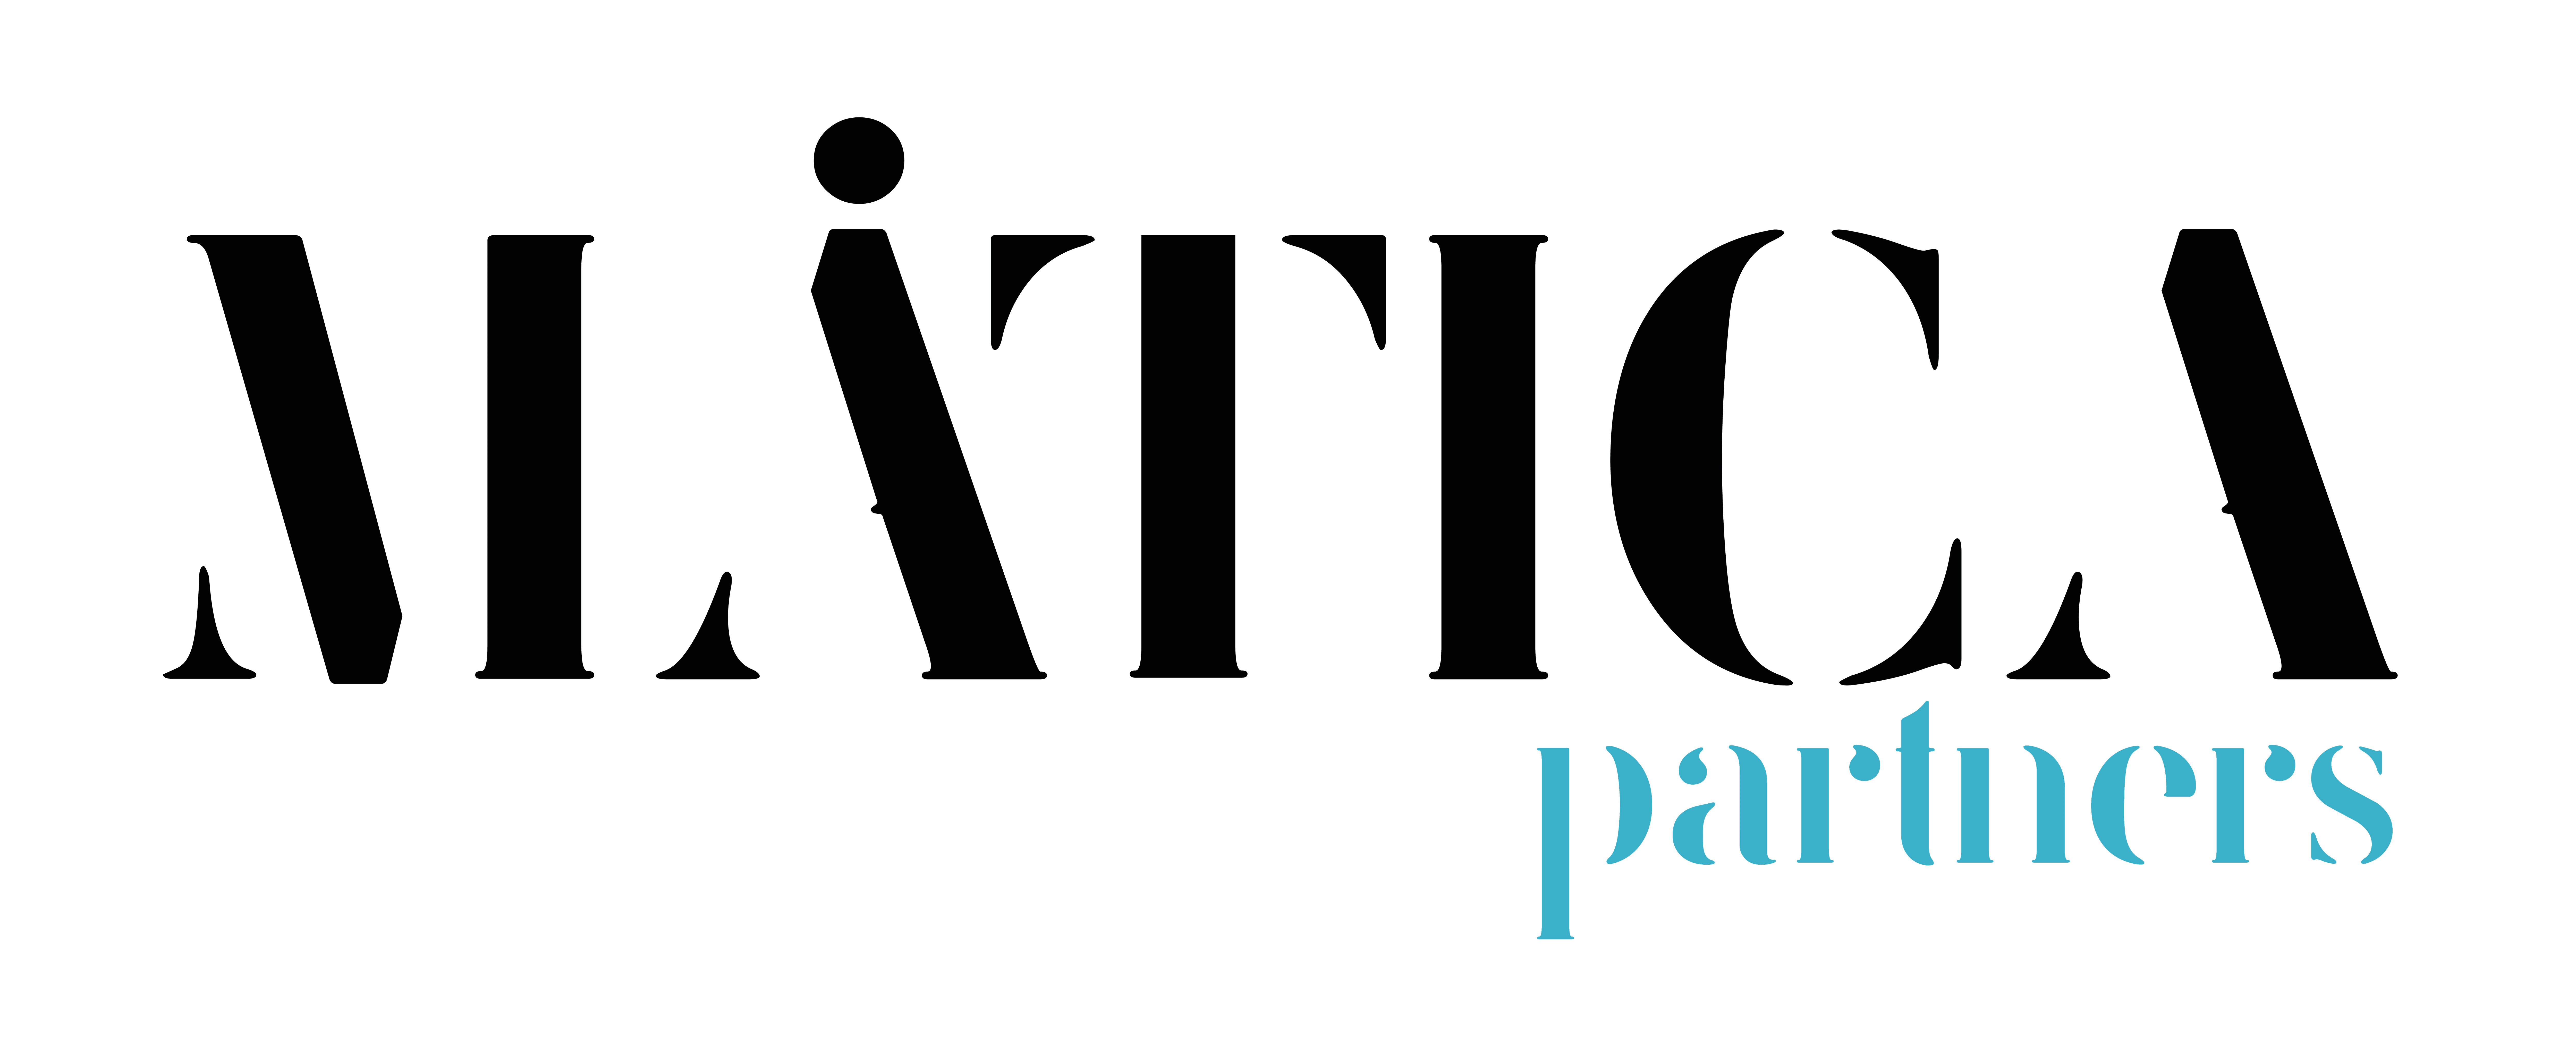 mática partners logo